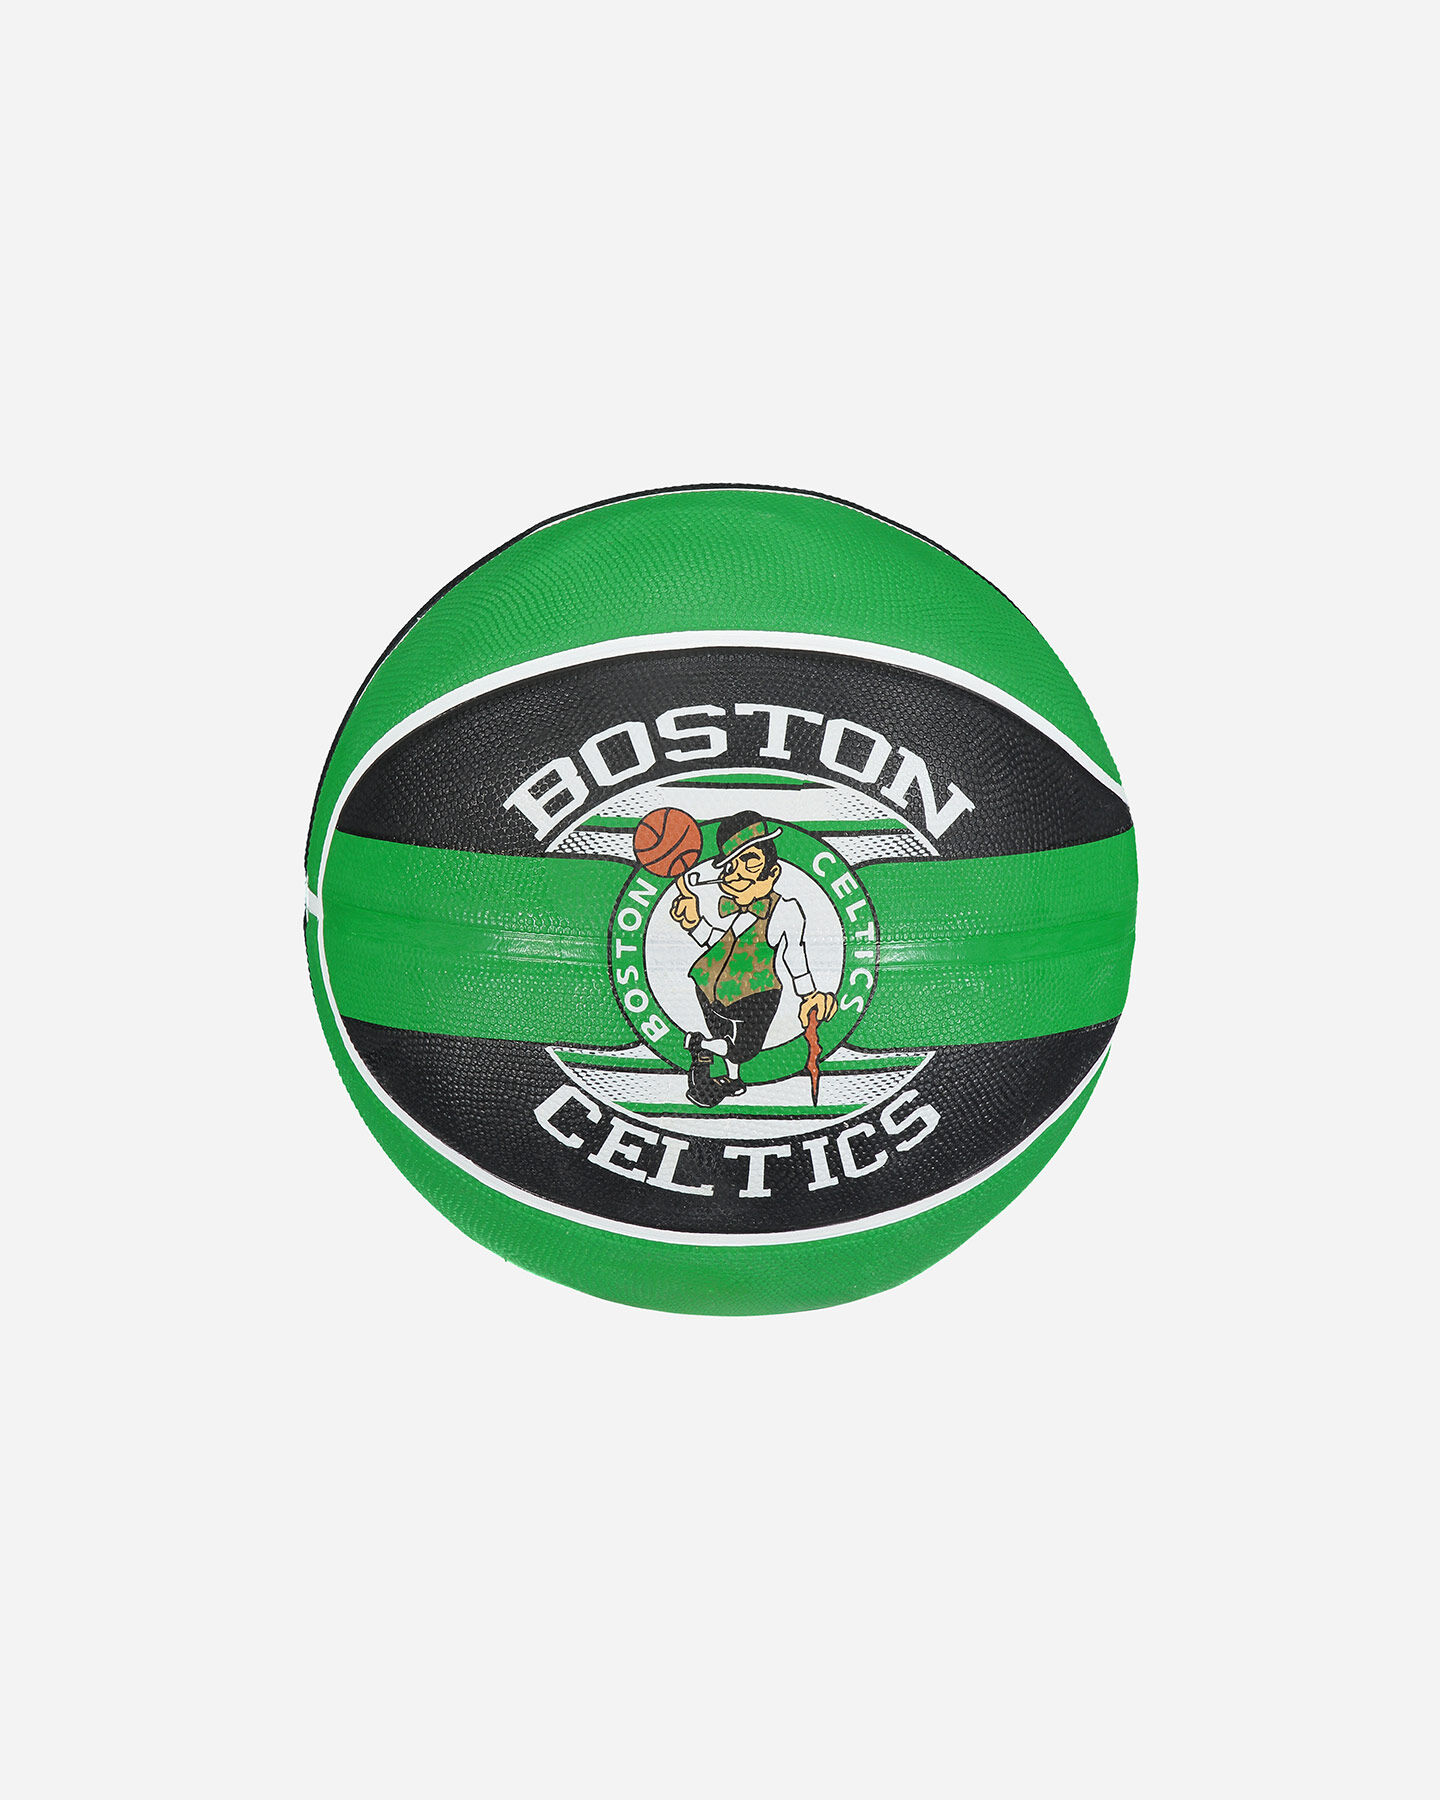  Pallone basket SPALDING BOSTON CELTICS MIS 7 S1314517|1|7 scatto 0